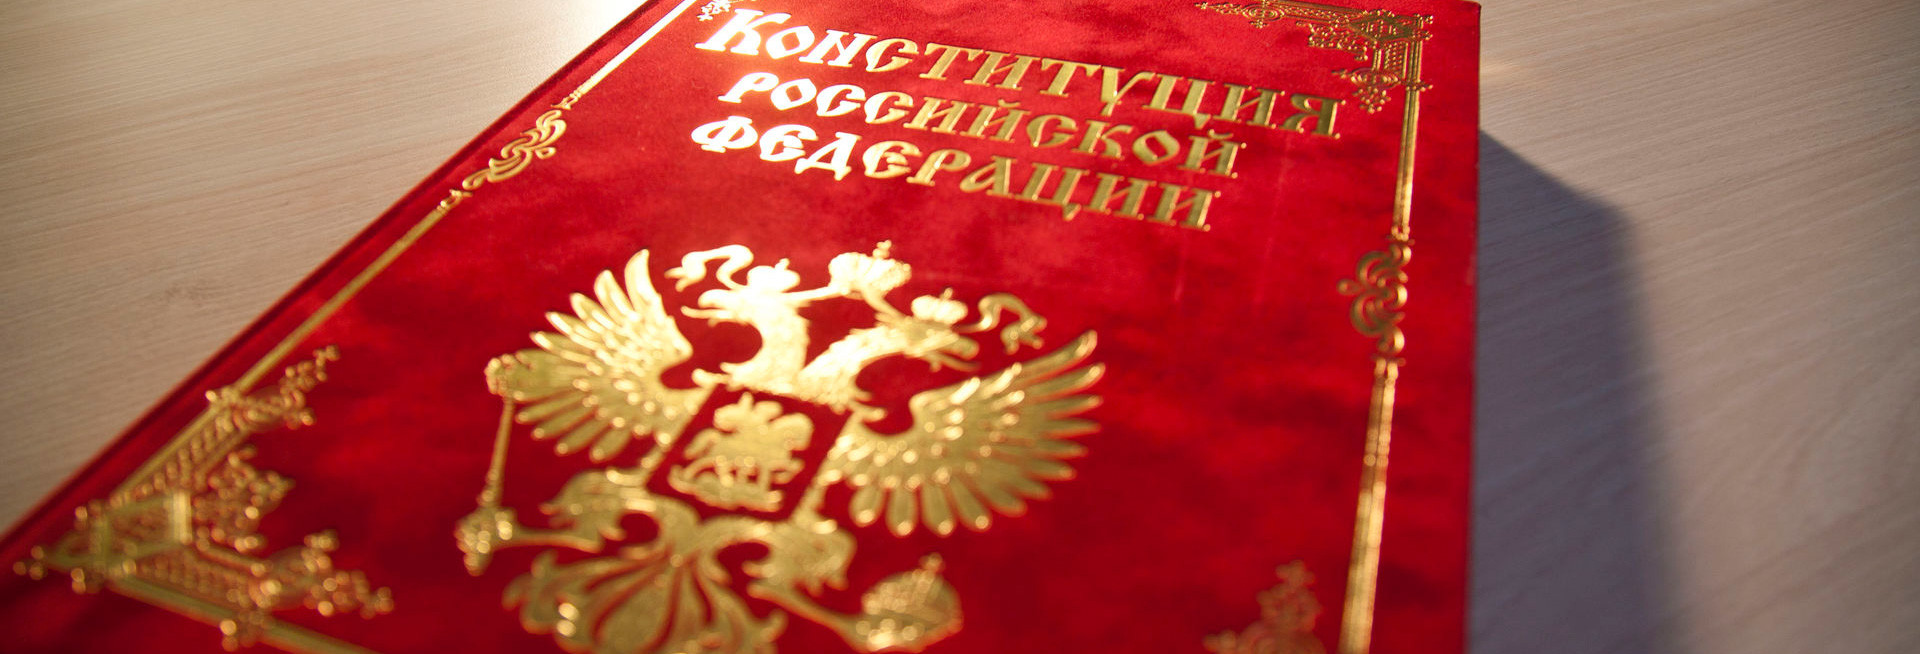 Как поправки в Конституцию повлияют на жизнь россиян?